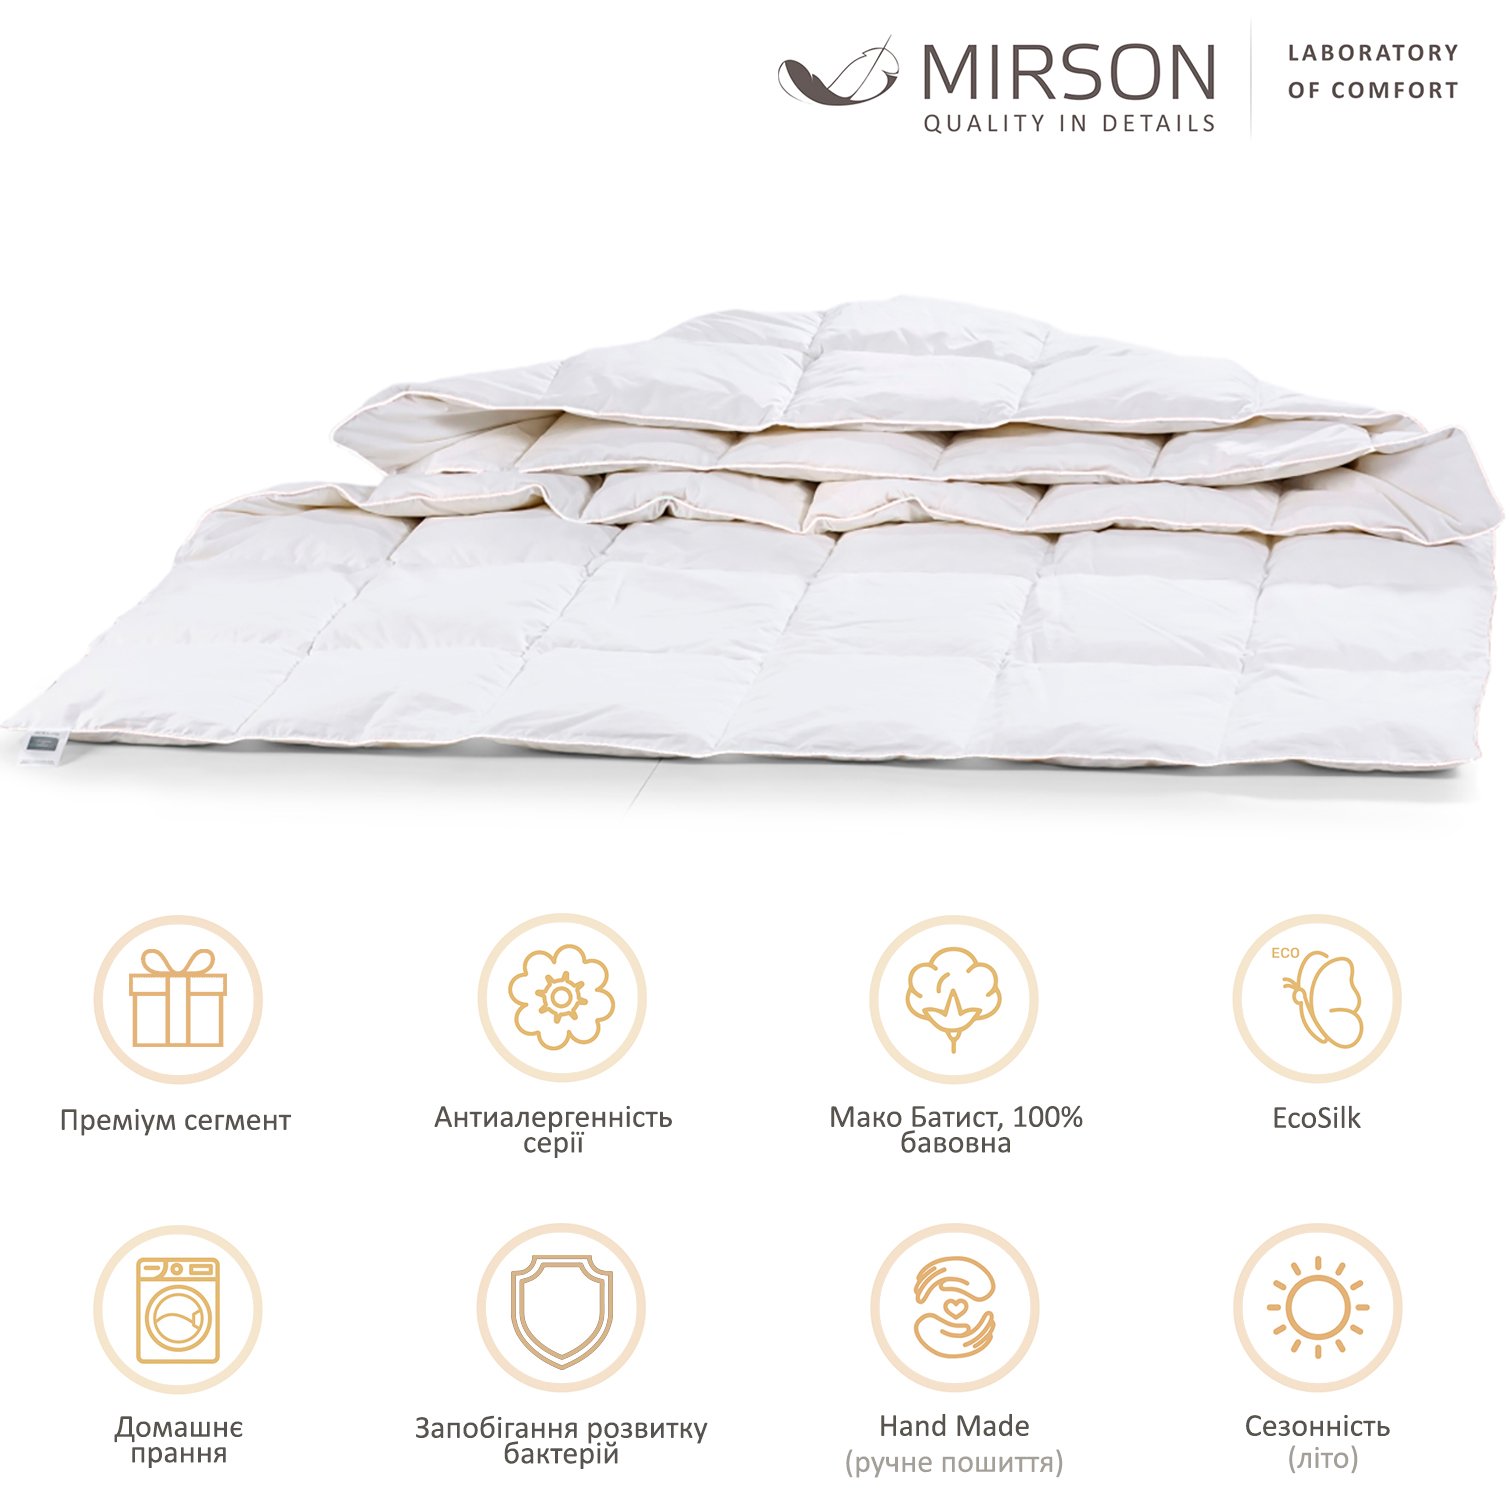 Одеяло антиаллергенное MirSon Luxury Exclusive EcoSilk №1315, летнее, 200x220 см, белое (237054385) - фото 5